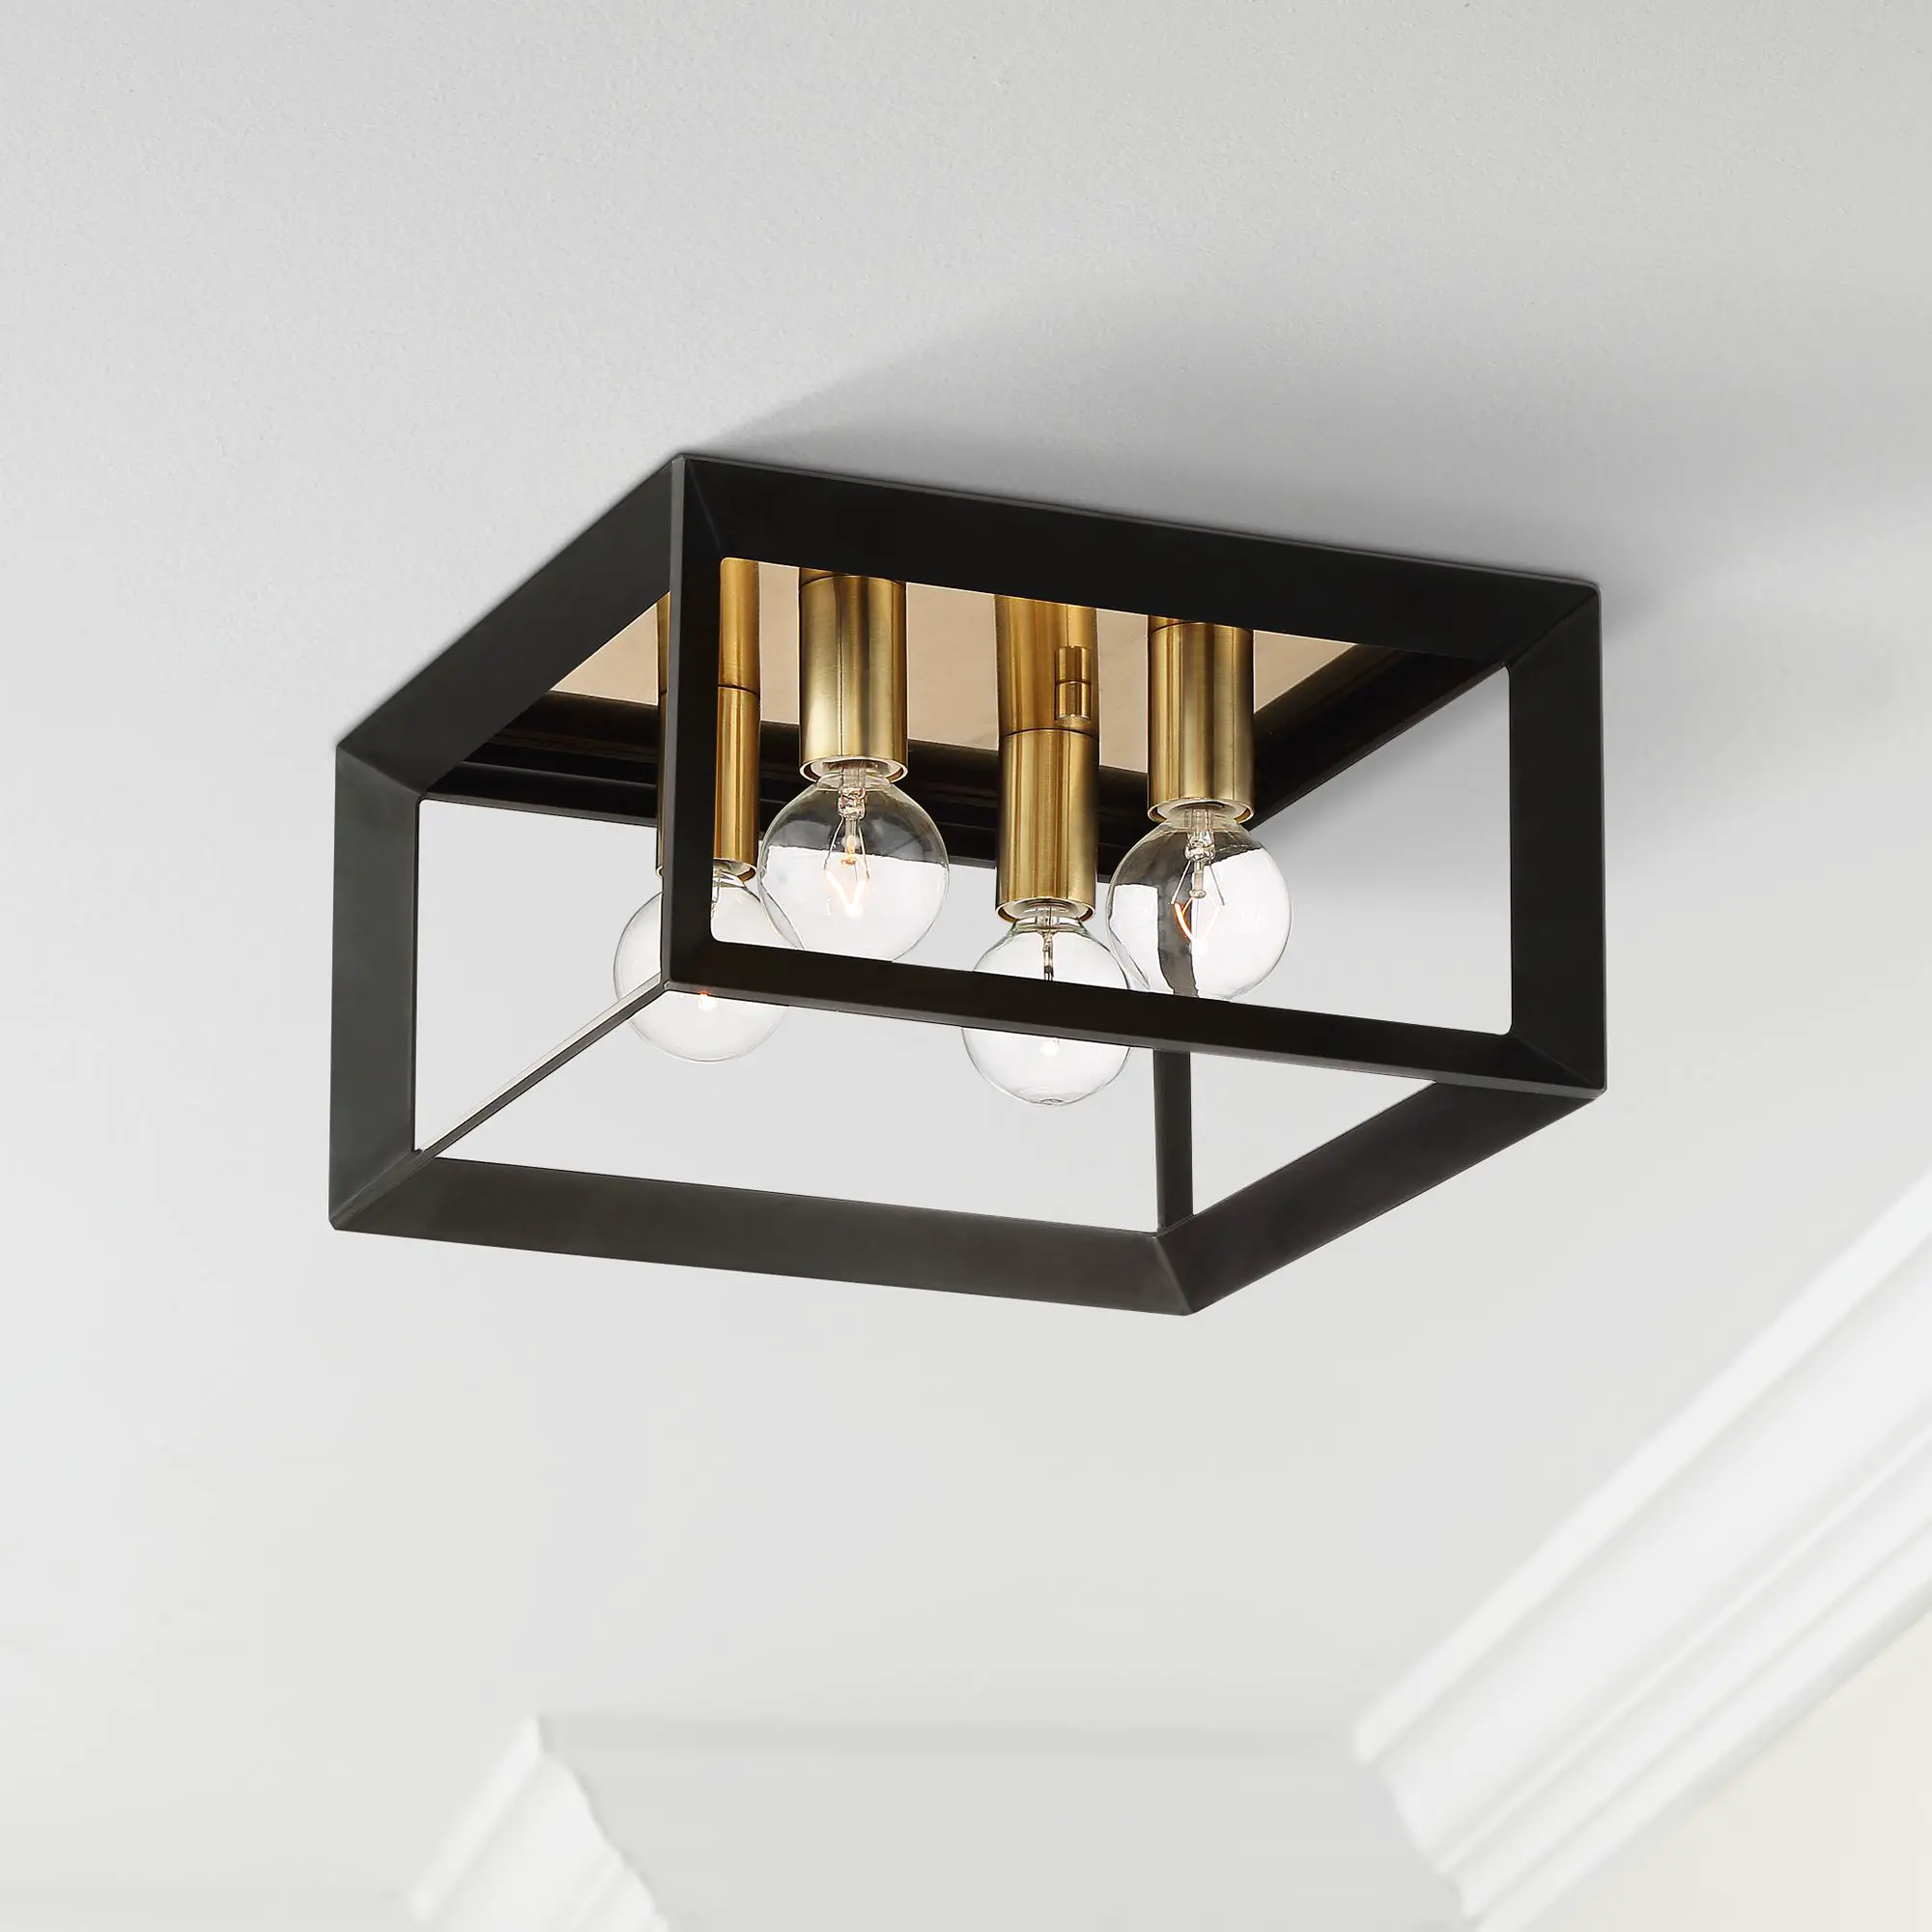 Possini Euro Design Modern Ceiling Light Flush Mount Fixture Black Gold ...